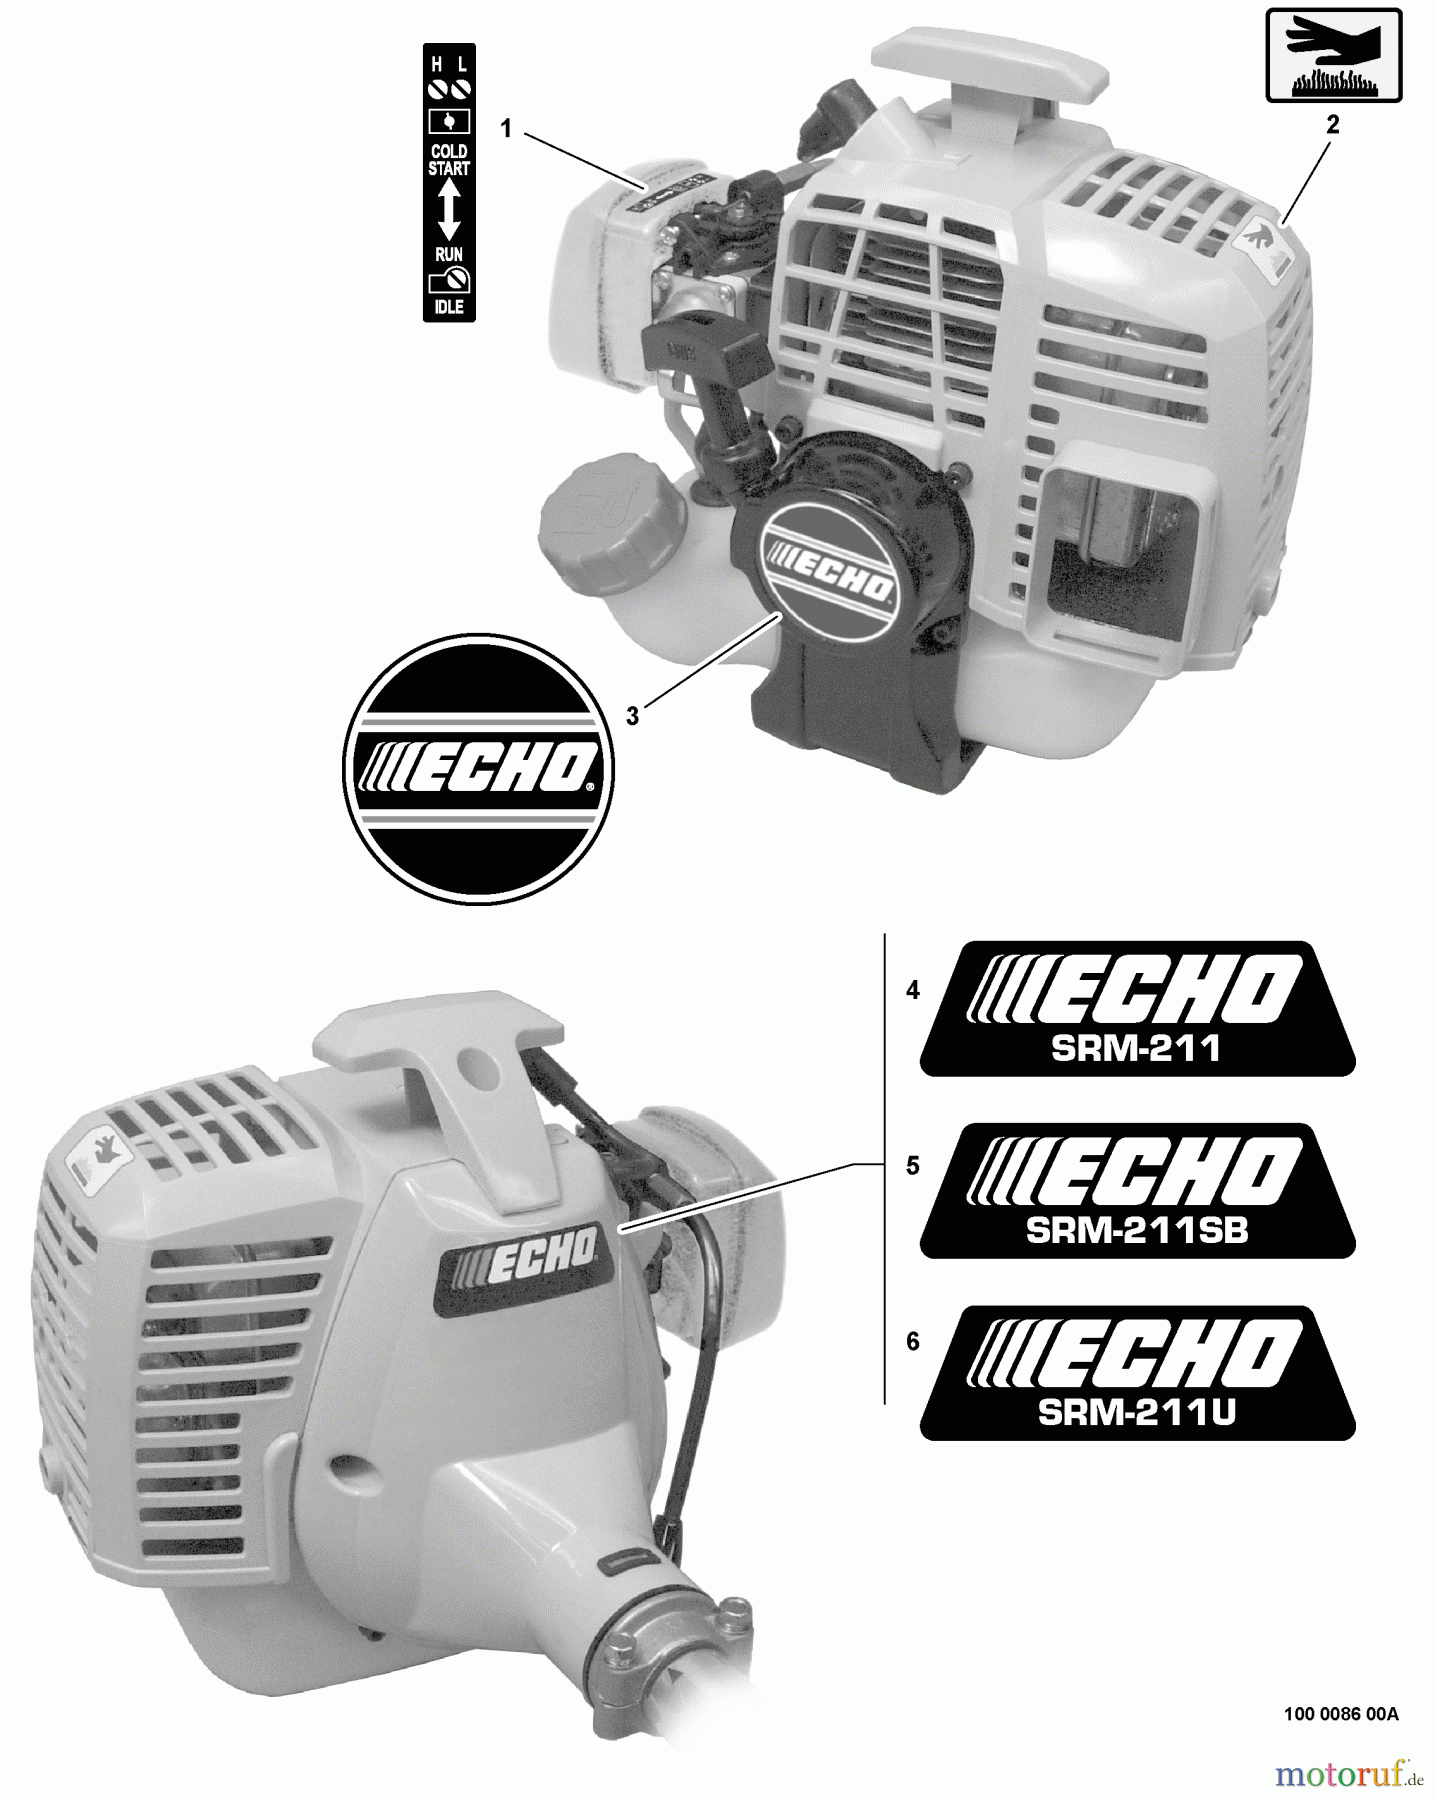  Echo Trimmer, Faden / Bürste SRM-211U - Echo String Trimmer/Brush Cutter, S/N:02001001 - 02999999 Labels